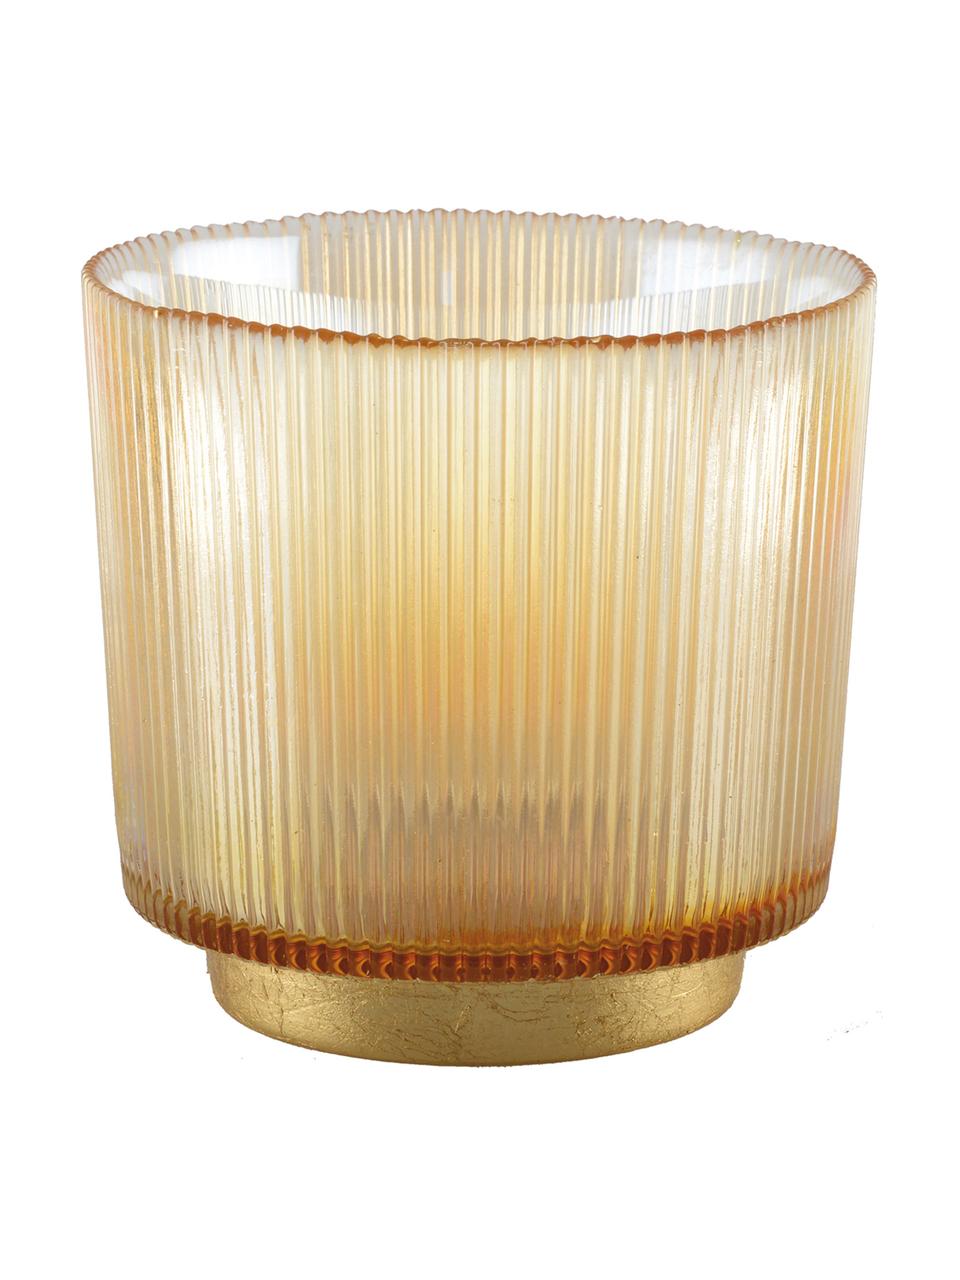 Svícen na čajovou svíčku Luster, Sklo, kov, Jantar, transparentní, zlatá, Ø 10 cm